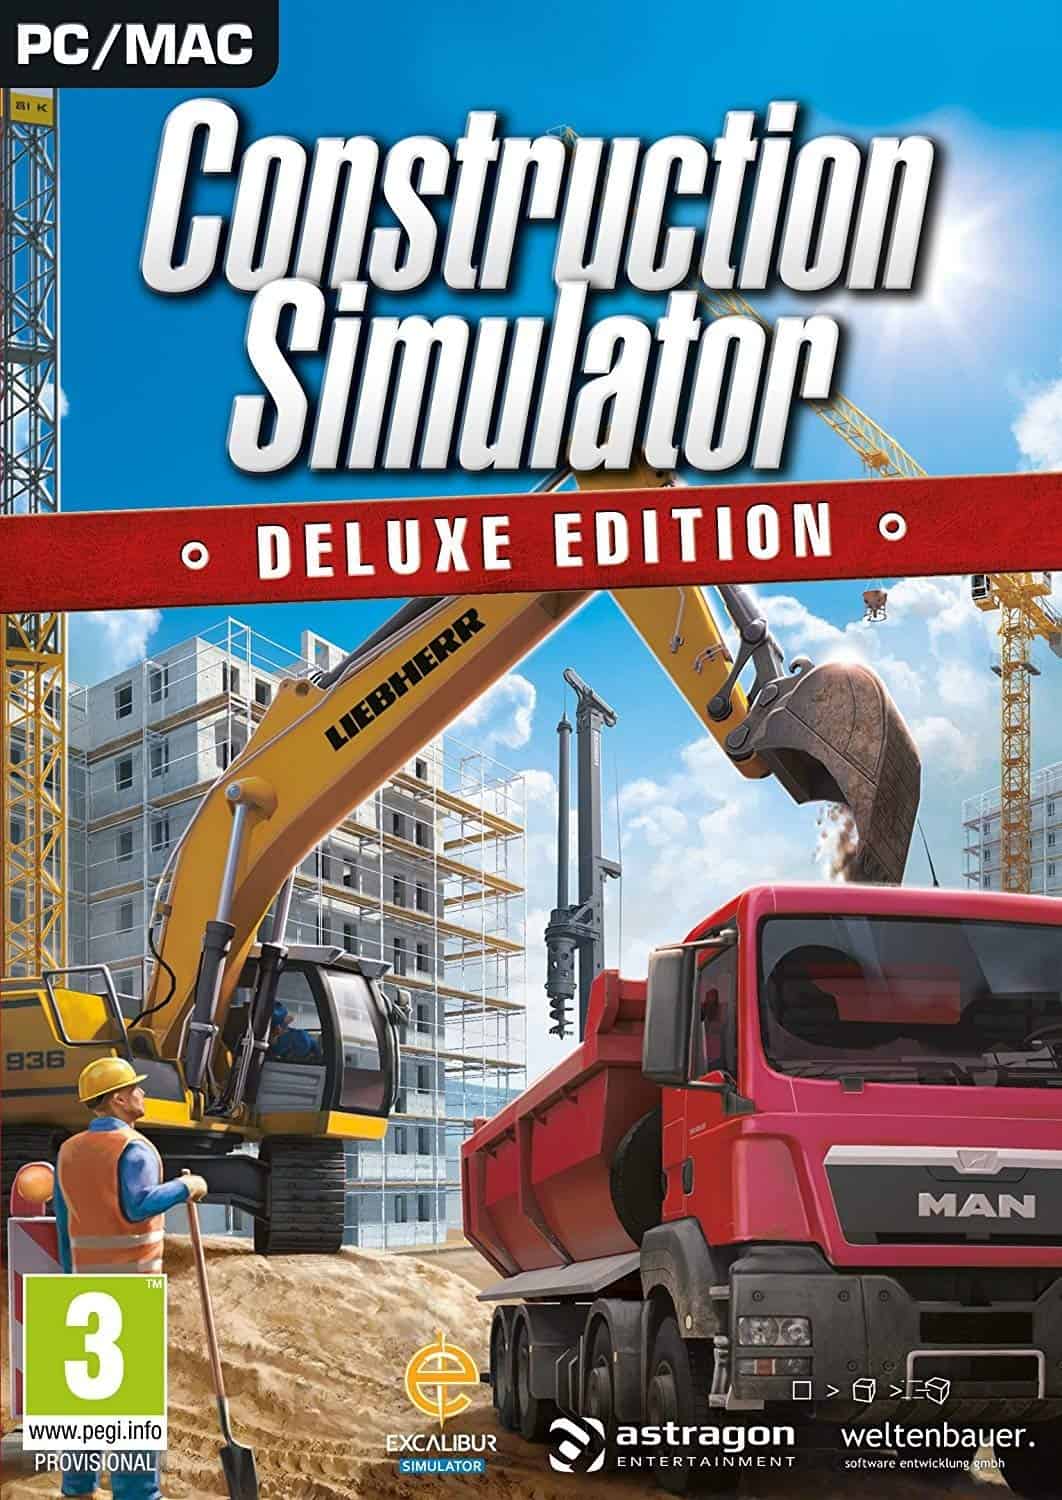 pc builder game simulator